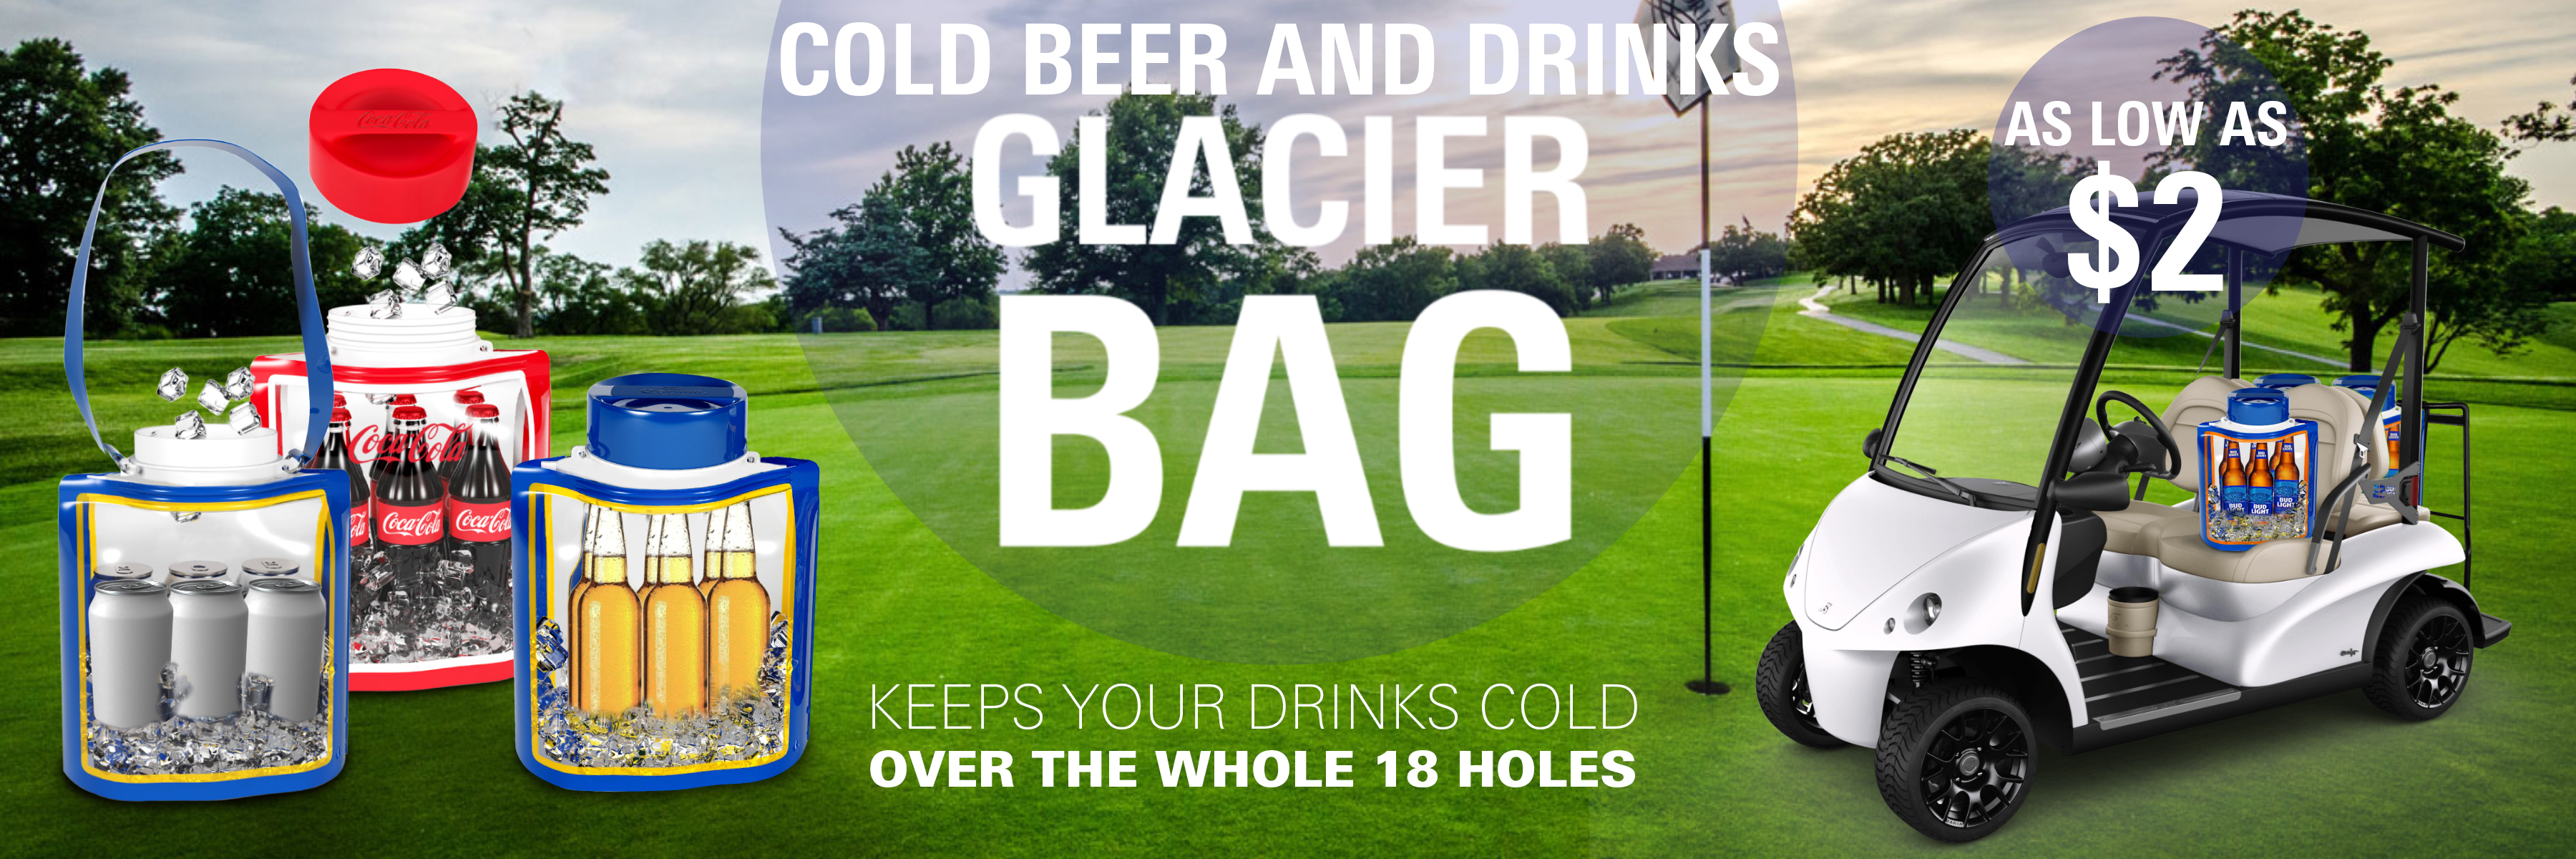 glacier bag golf course